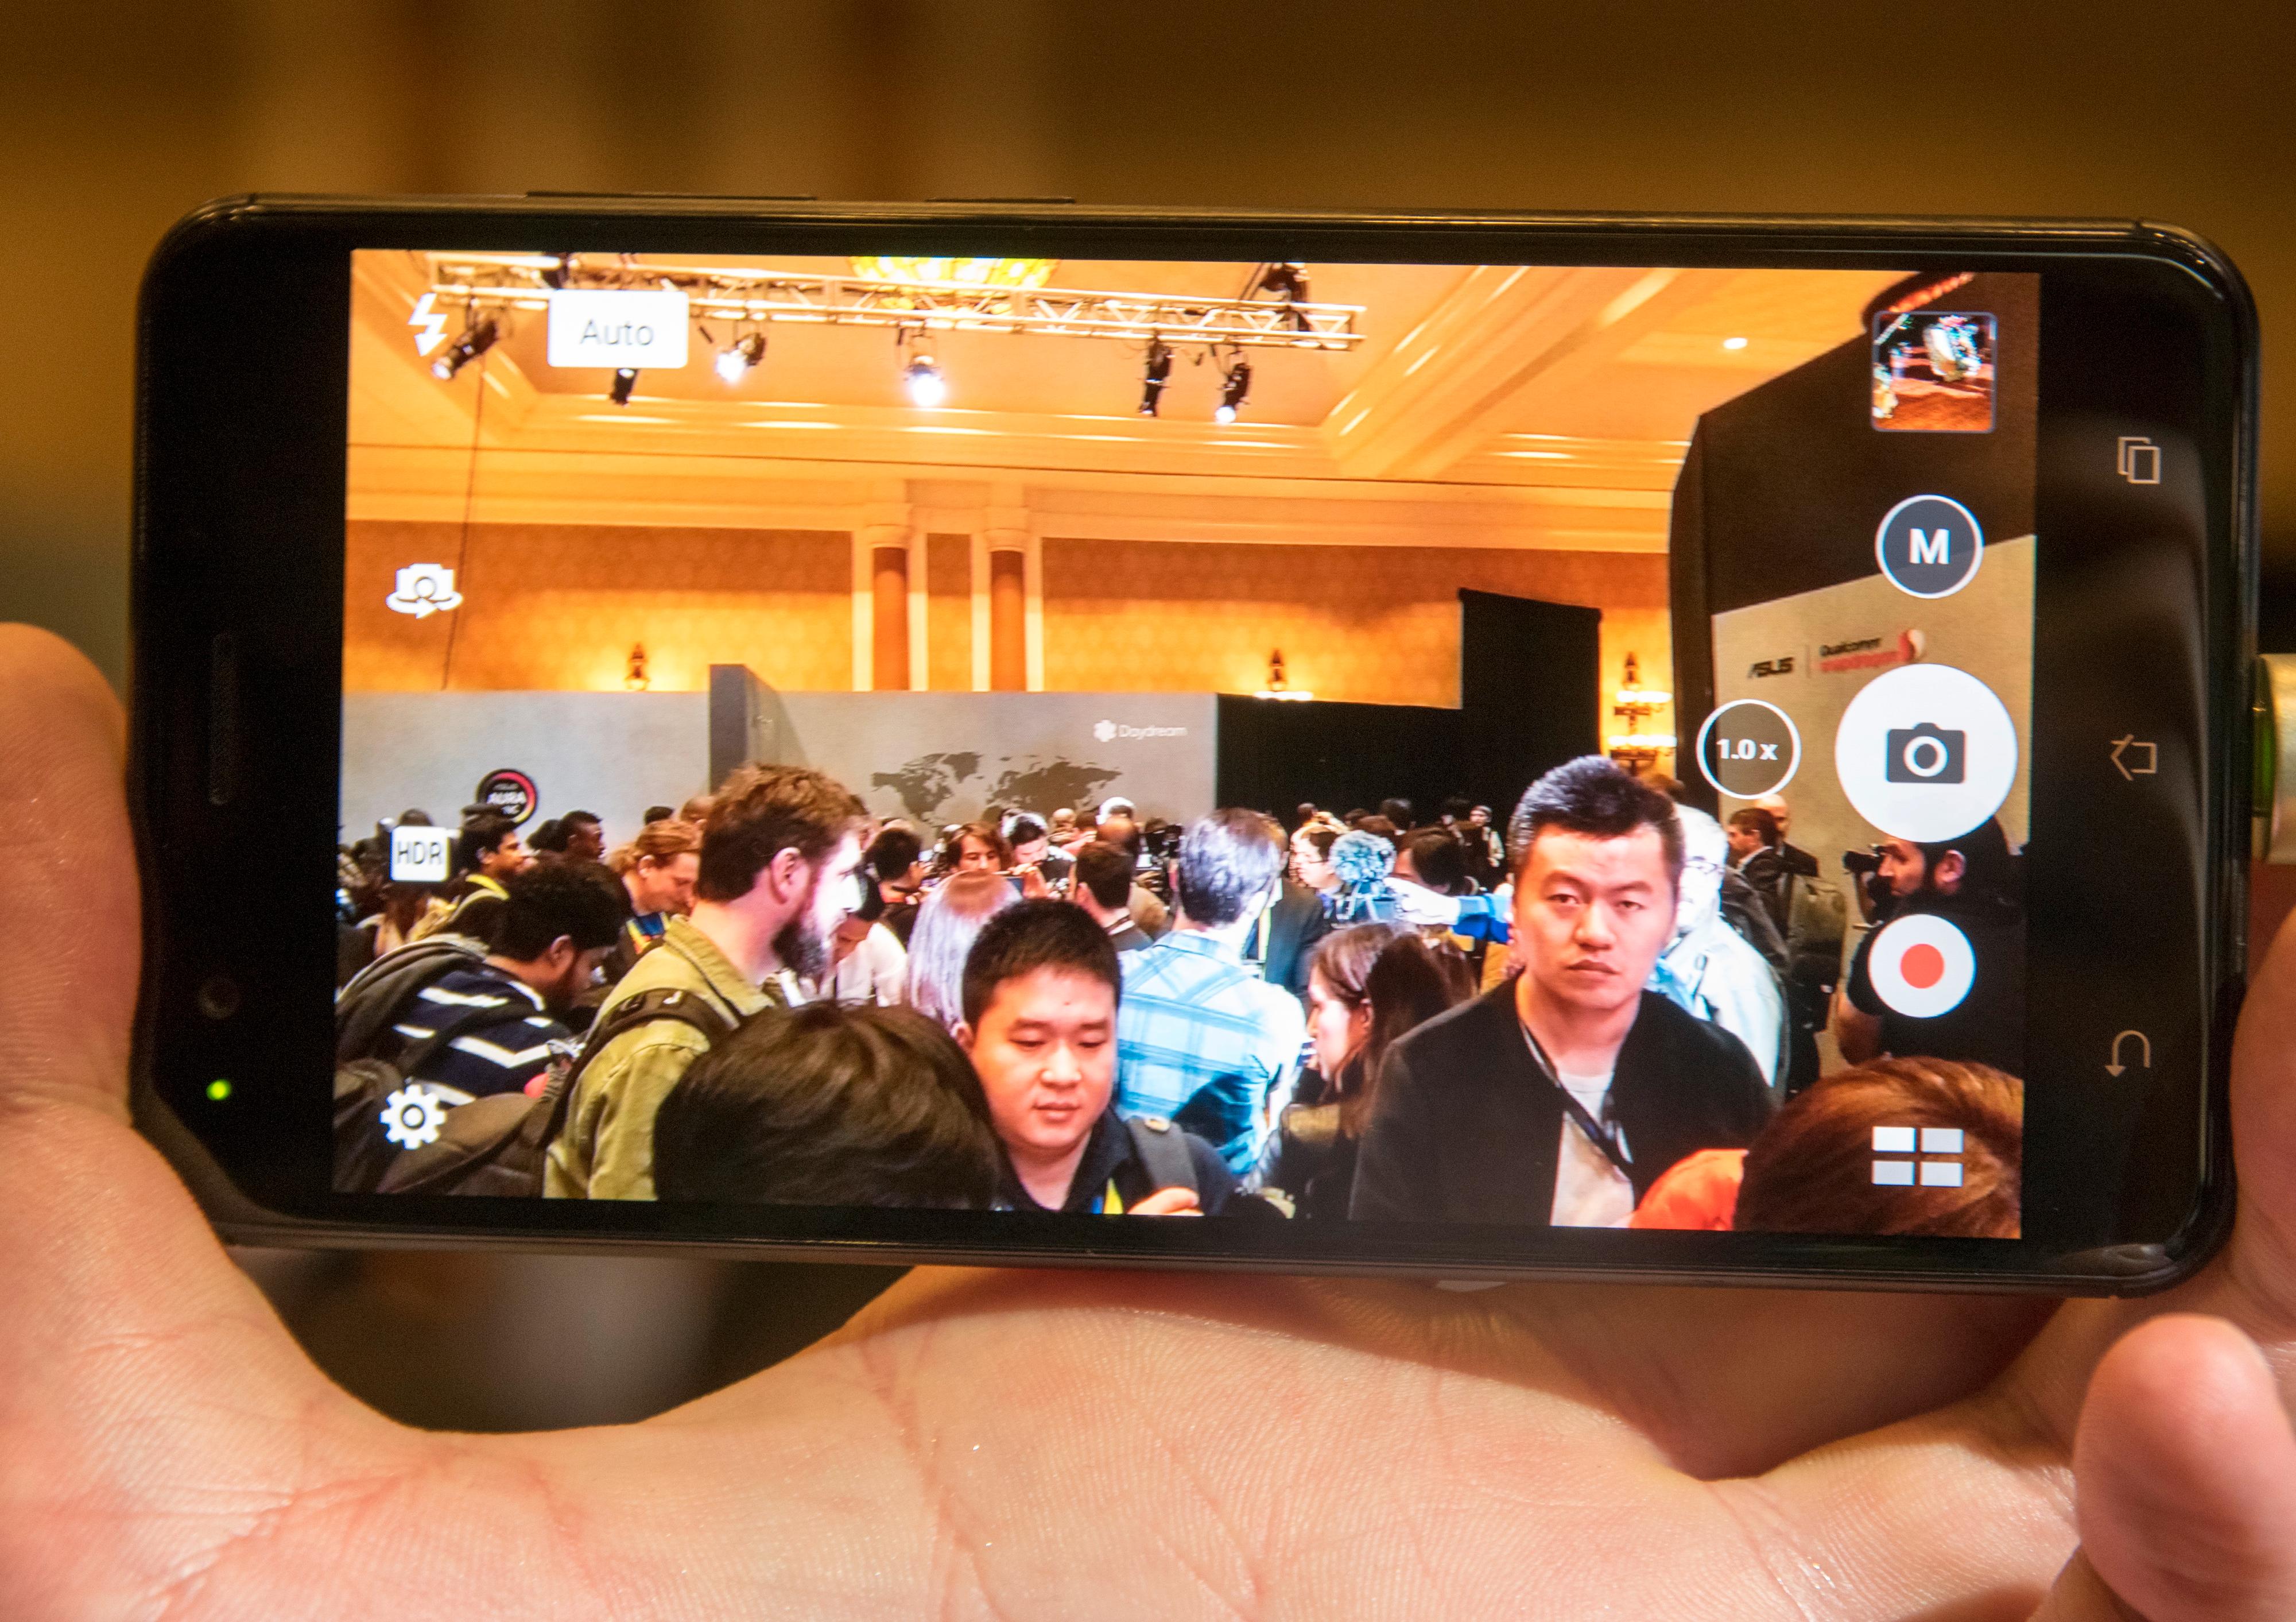 Kameraappen er naturligvis en av de viktigere på en telefon som ZenFone 3 Zoom. Se testbilder fra telefonen i galleriet nederst.